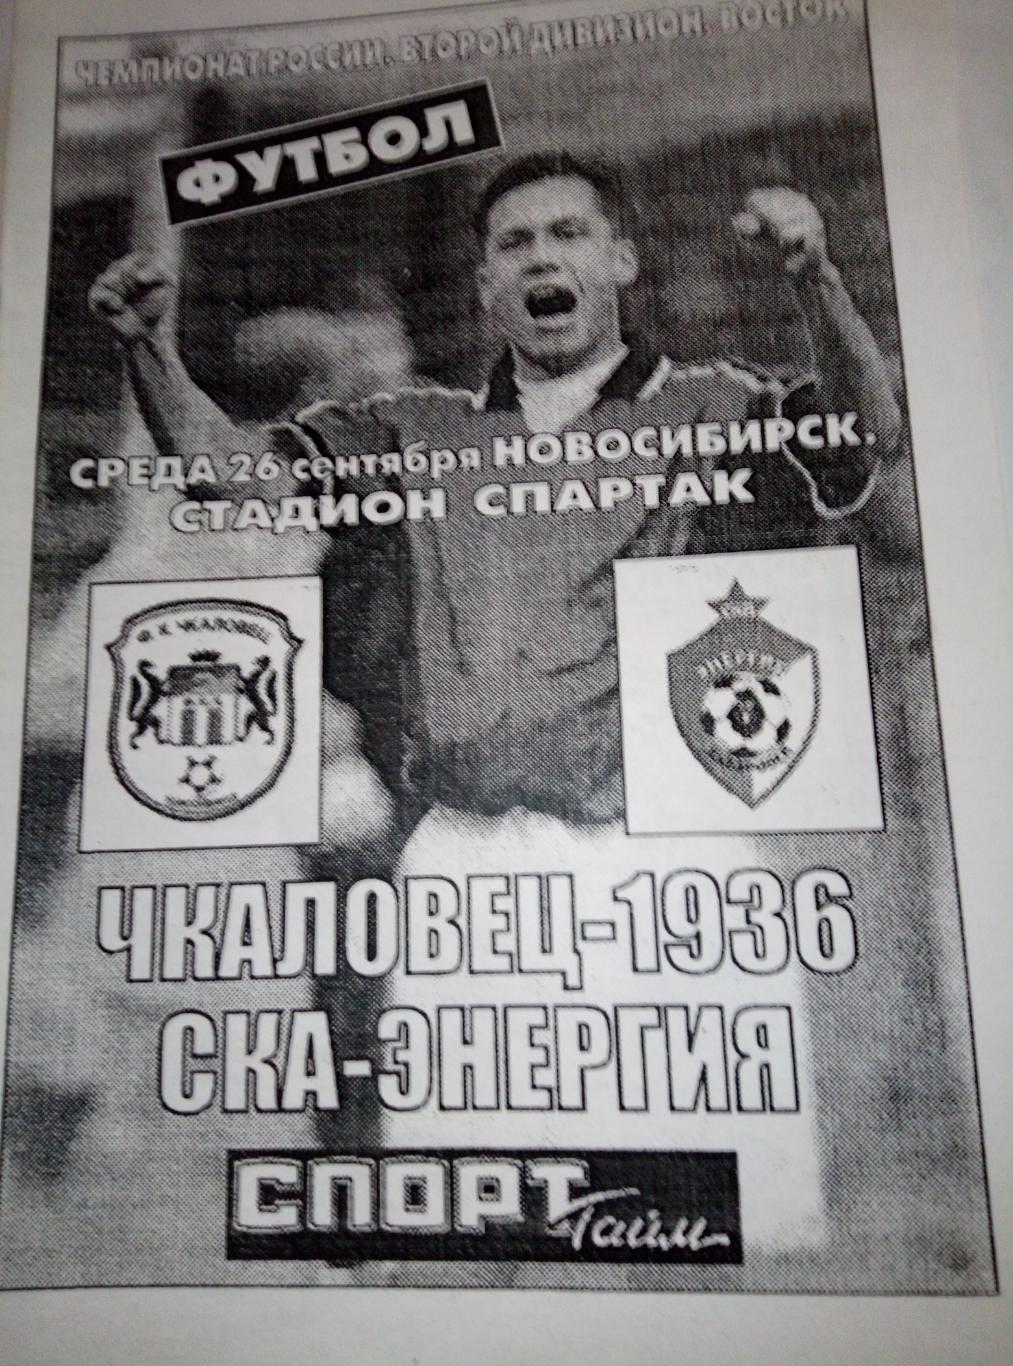 Чкаловец-1936 Новосибирск - СКА Хабаровск - 26.09.2001 (изд. Спорт-Тайм)